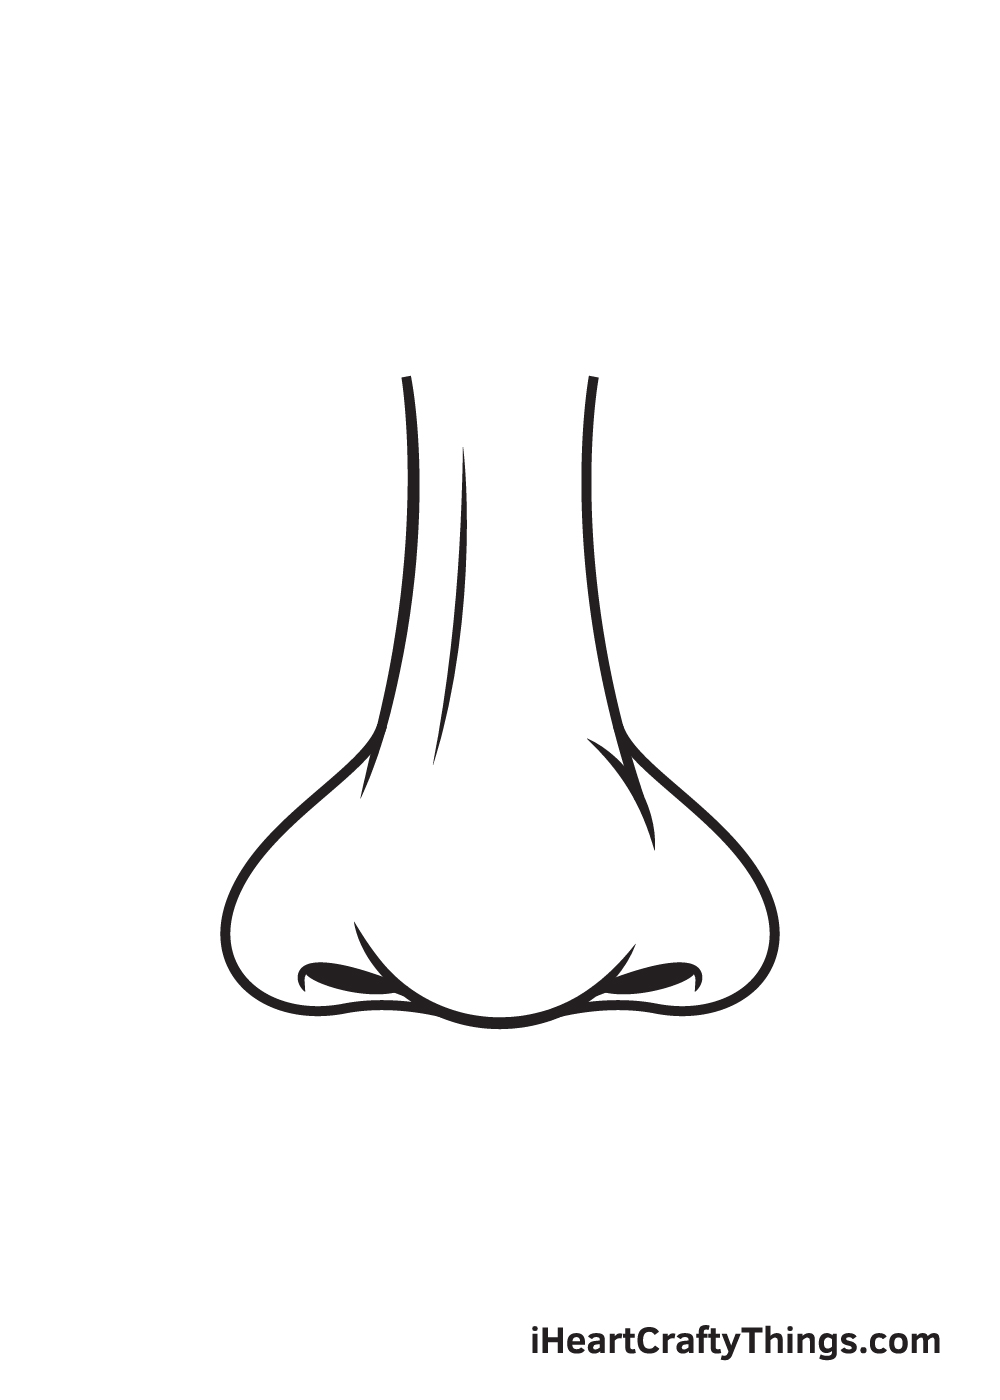 Nose DRAWING – STEP 9 - Hướng dẫn chi tiết cách vẽ mũi đơn giản với 9 bước cơ bản